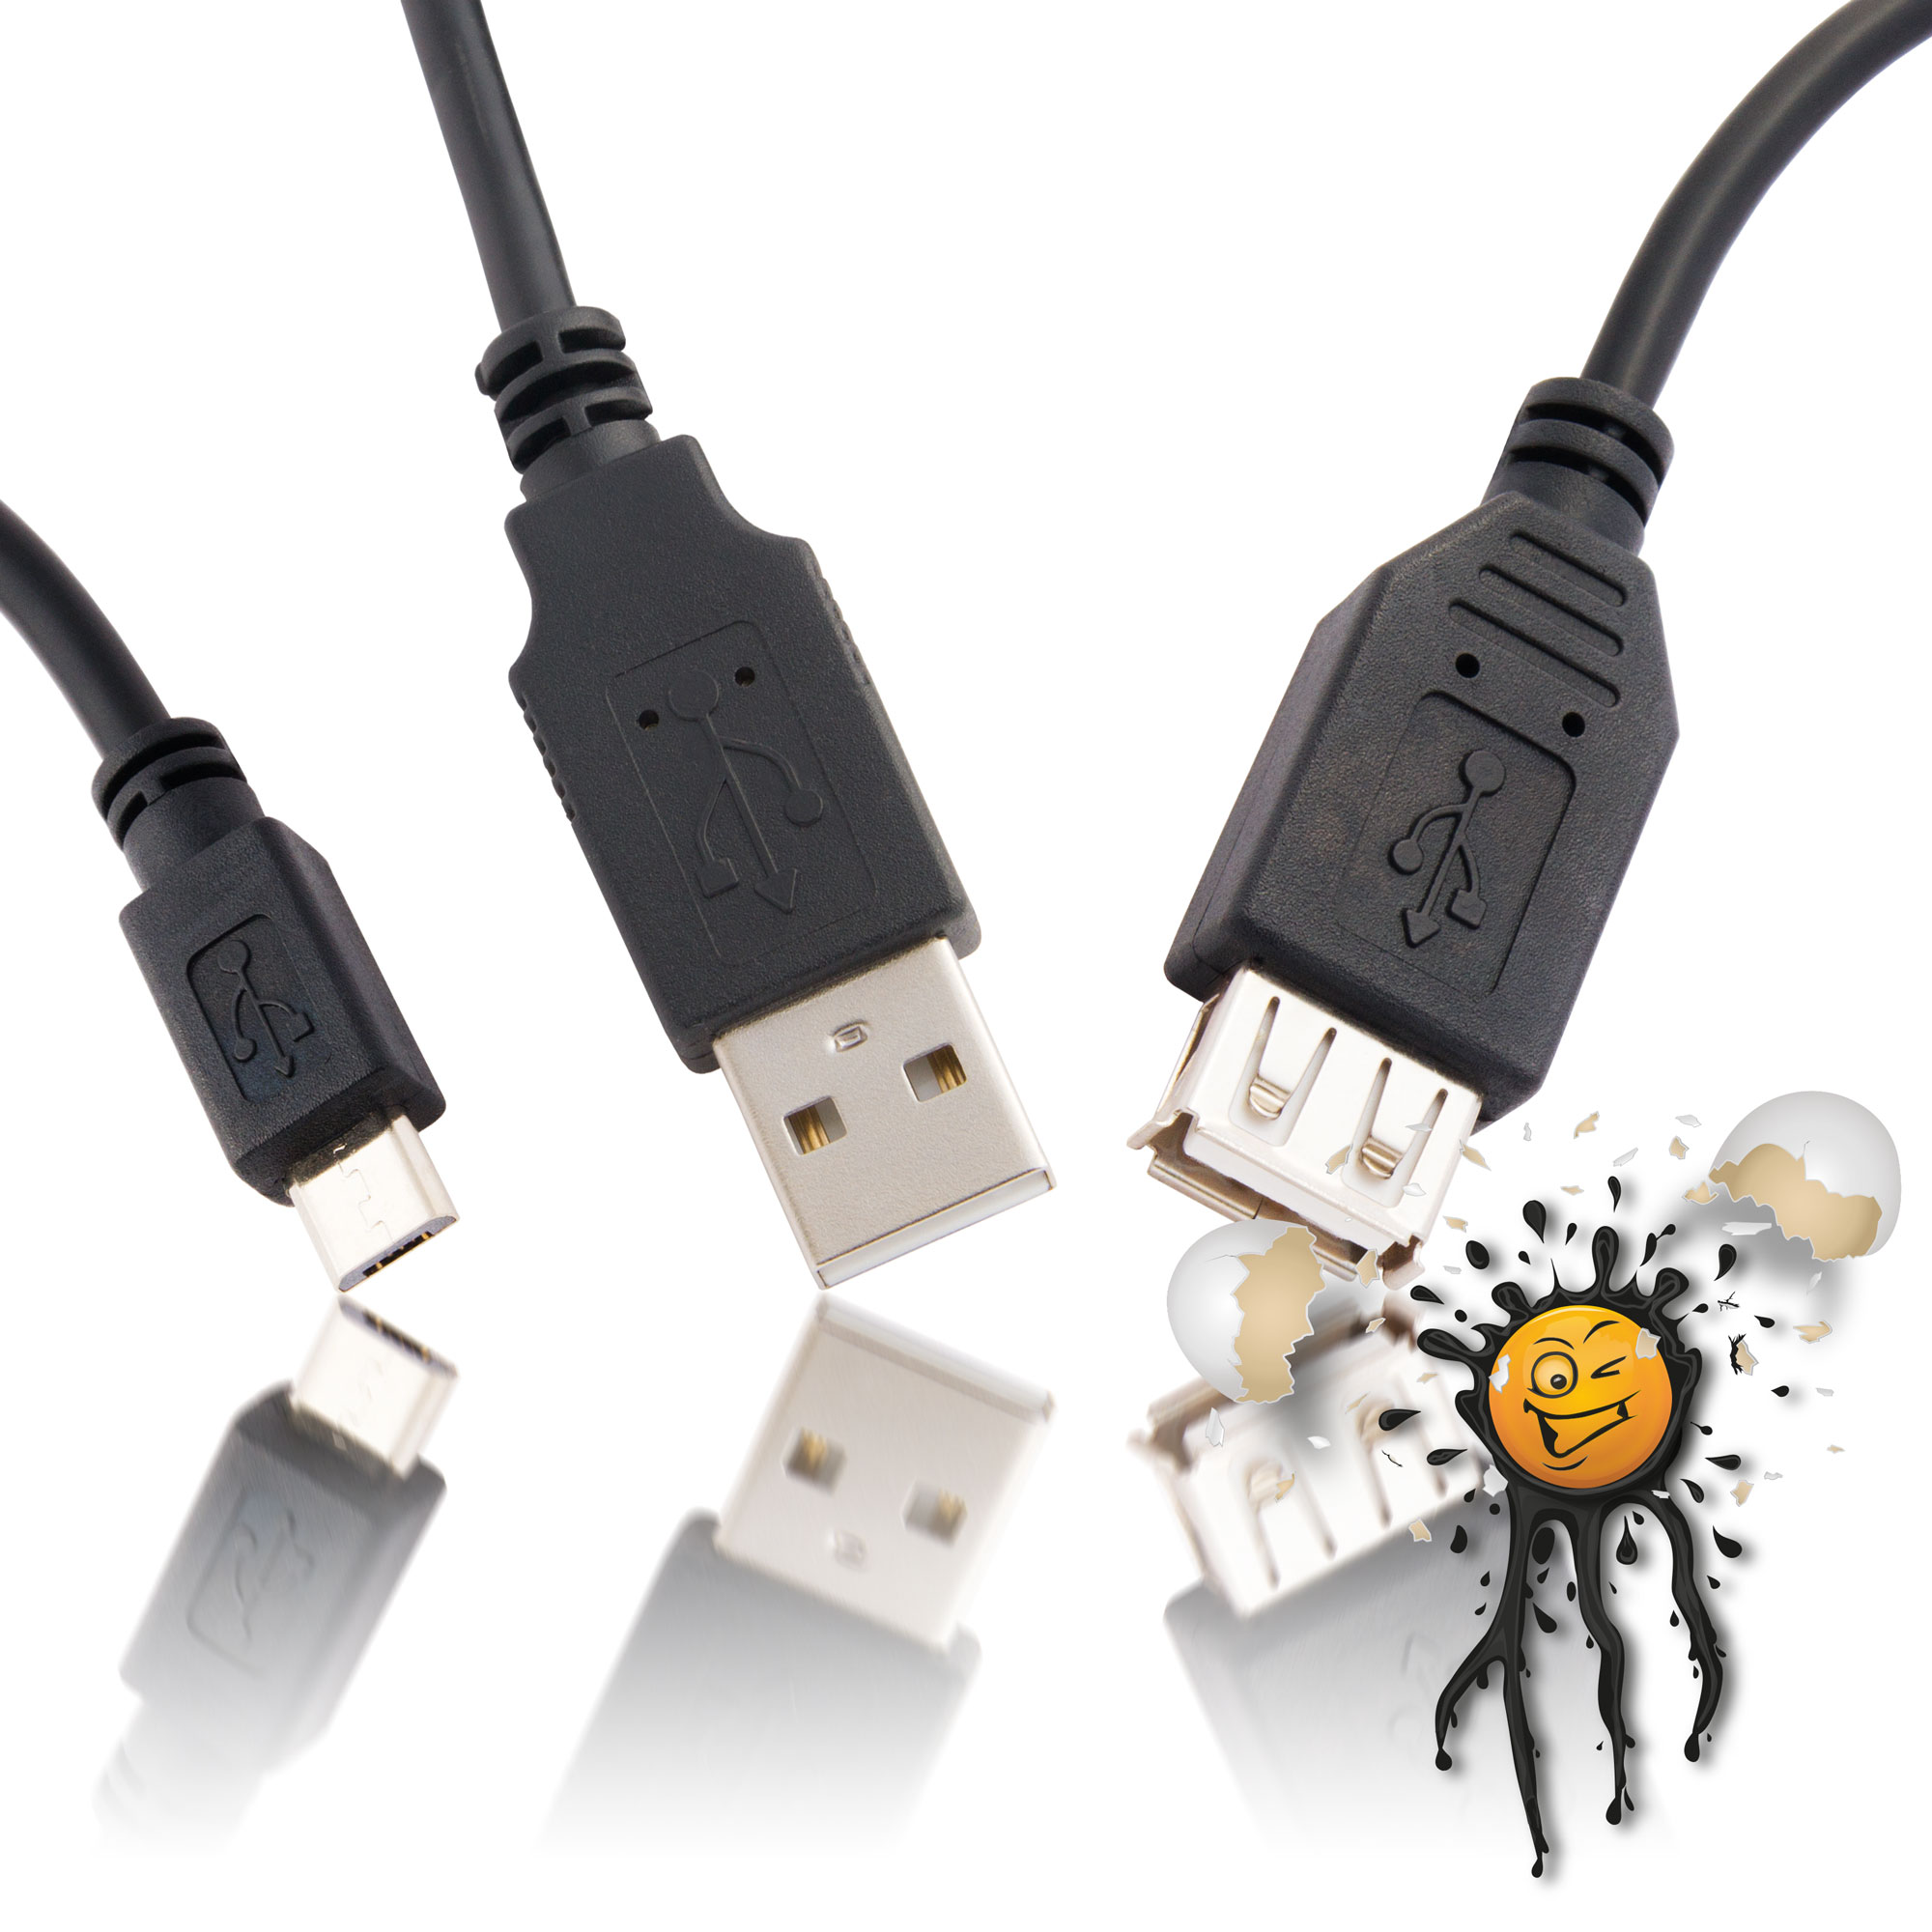 USB Kabel und Adapter